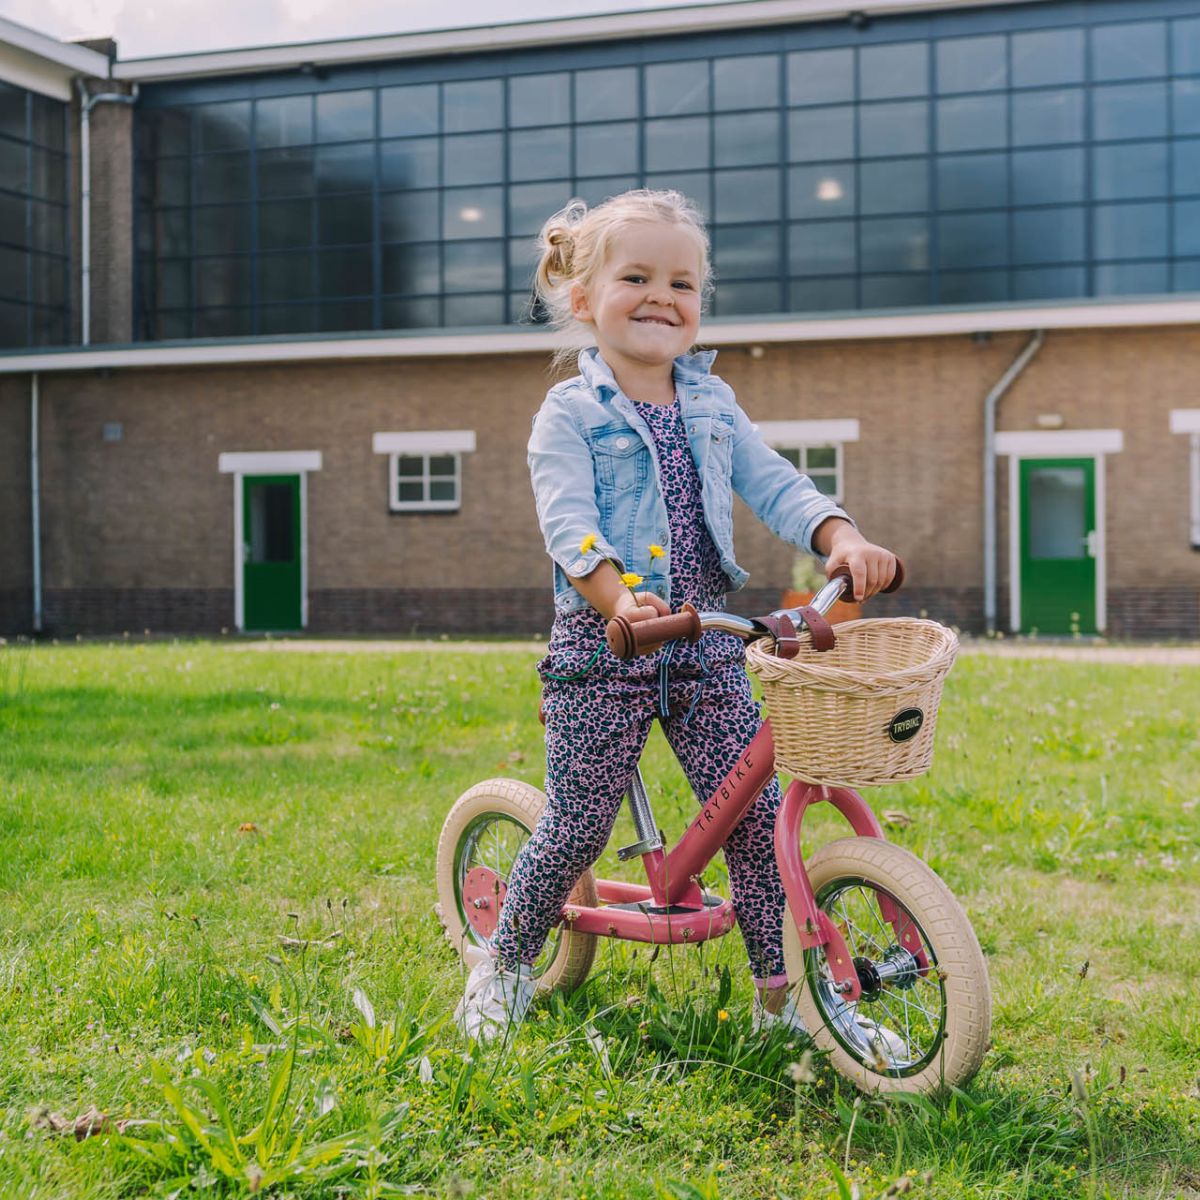 Bestel de Trybike steel 2-in-1 driewieler in de kleur vintage pink en laat je kindje het plezier van fietsen ontdekken! Eenvoudig om te bouwen van een loopfiets naar een echte fiets. Duurzaam en veilig. VanZus